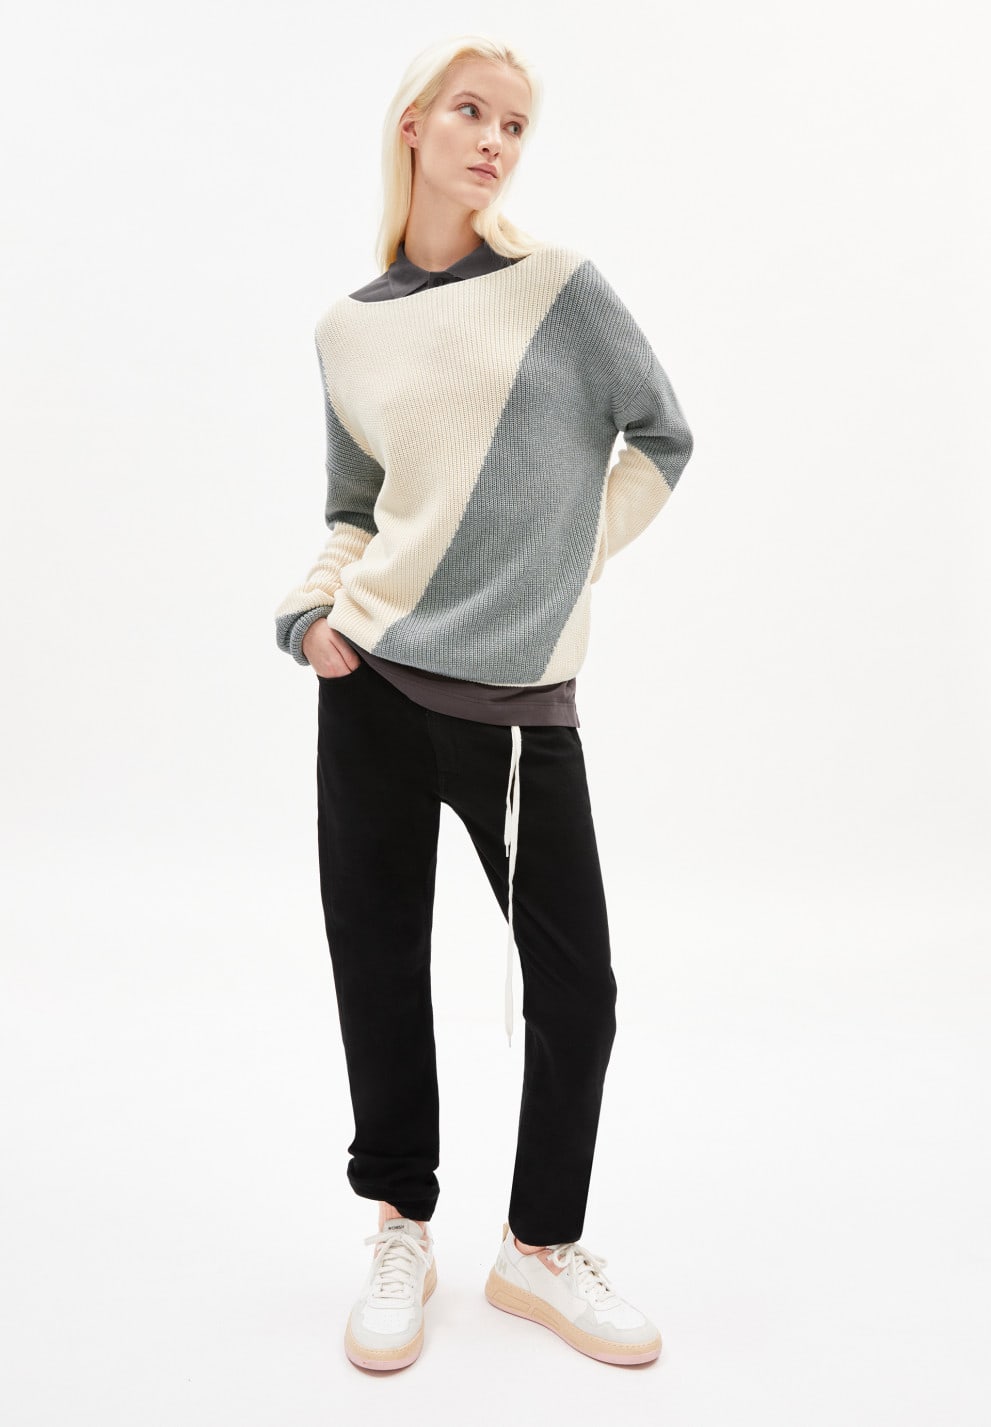 Mibaa Block Stripe Knitted Sweater Undyed/Grey Organic Cotton Size XL